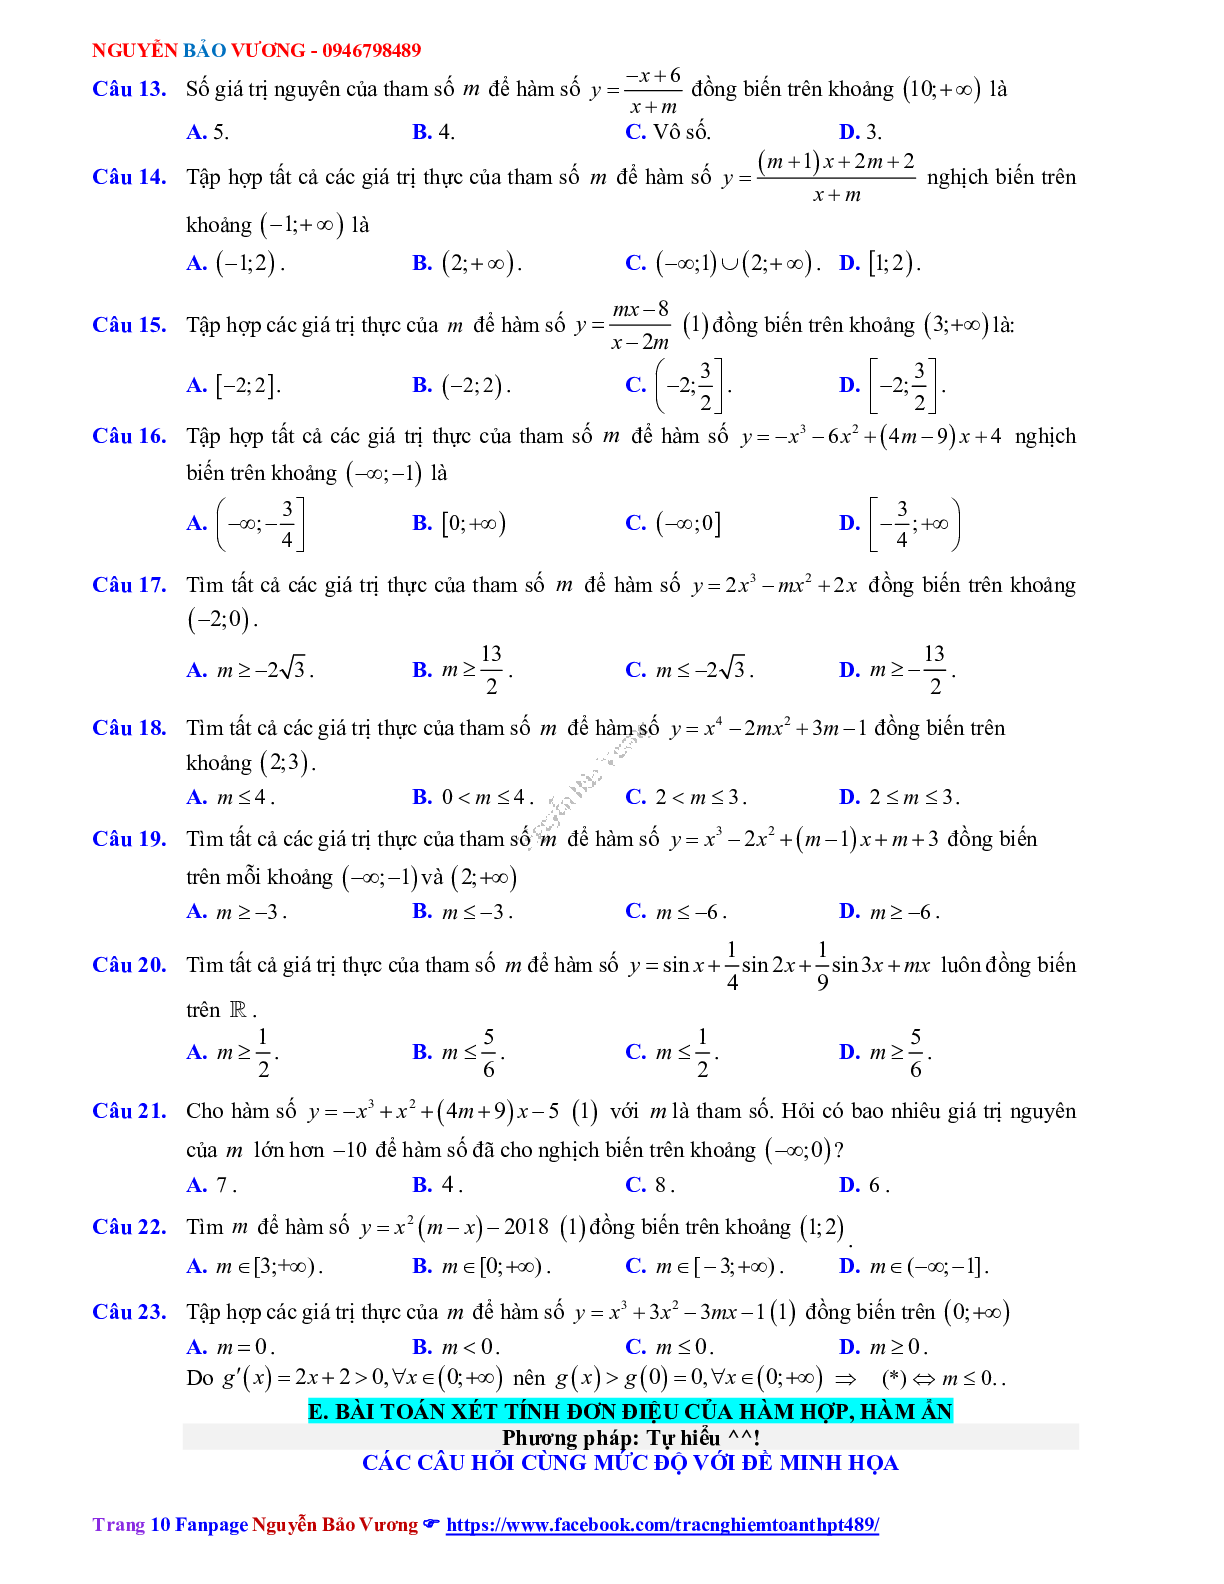 Phương pháp giải Tính đơn điệu của hàm số 2023 (lý thuyết và bài tập) (trang 10)